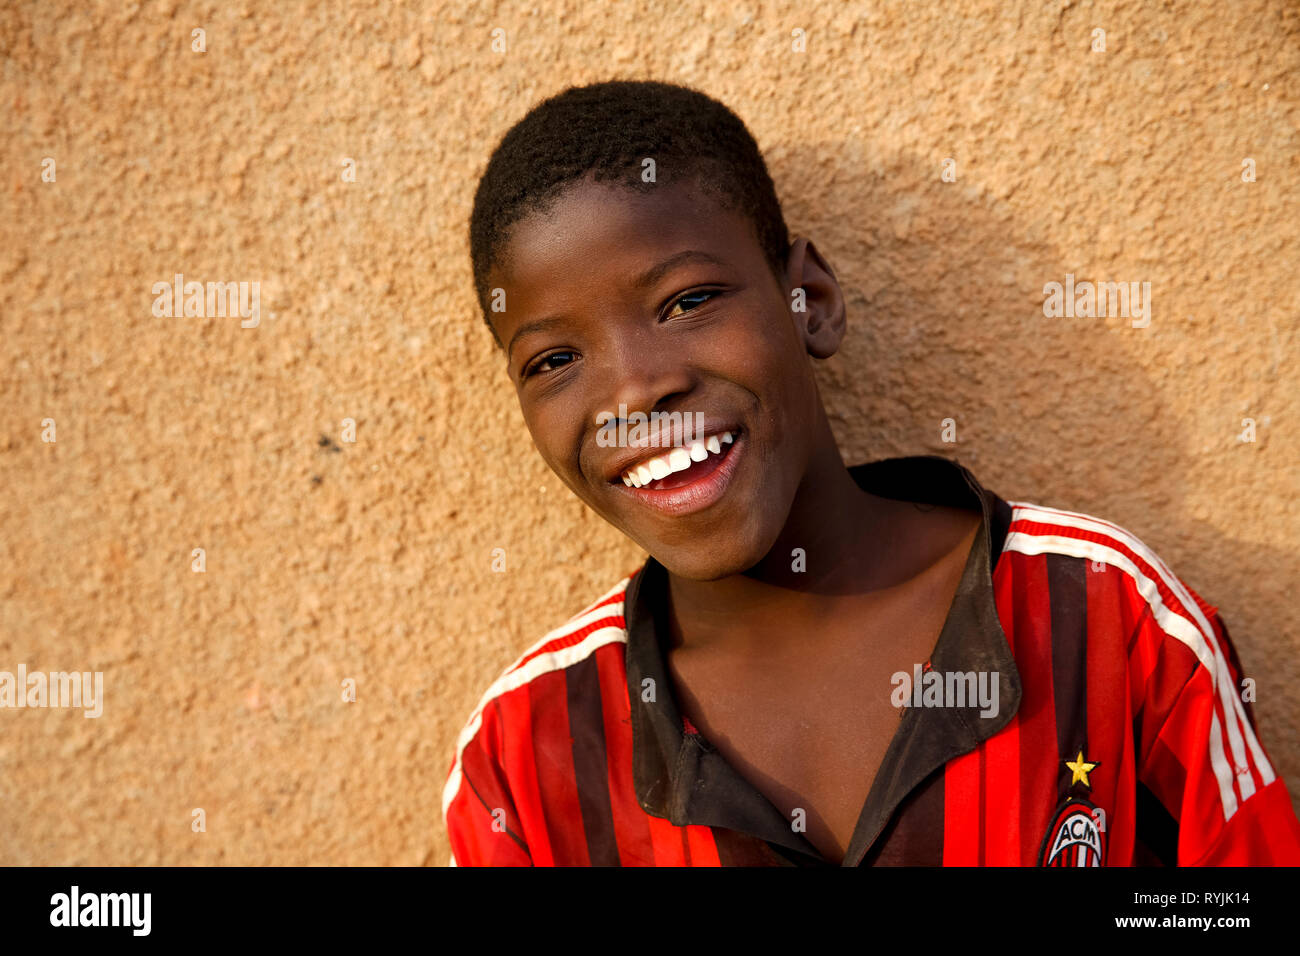 Smiling Ougadougou boy, Burkina Faso. Stock Photo